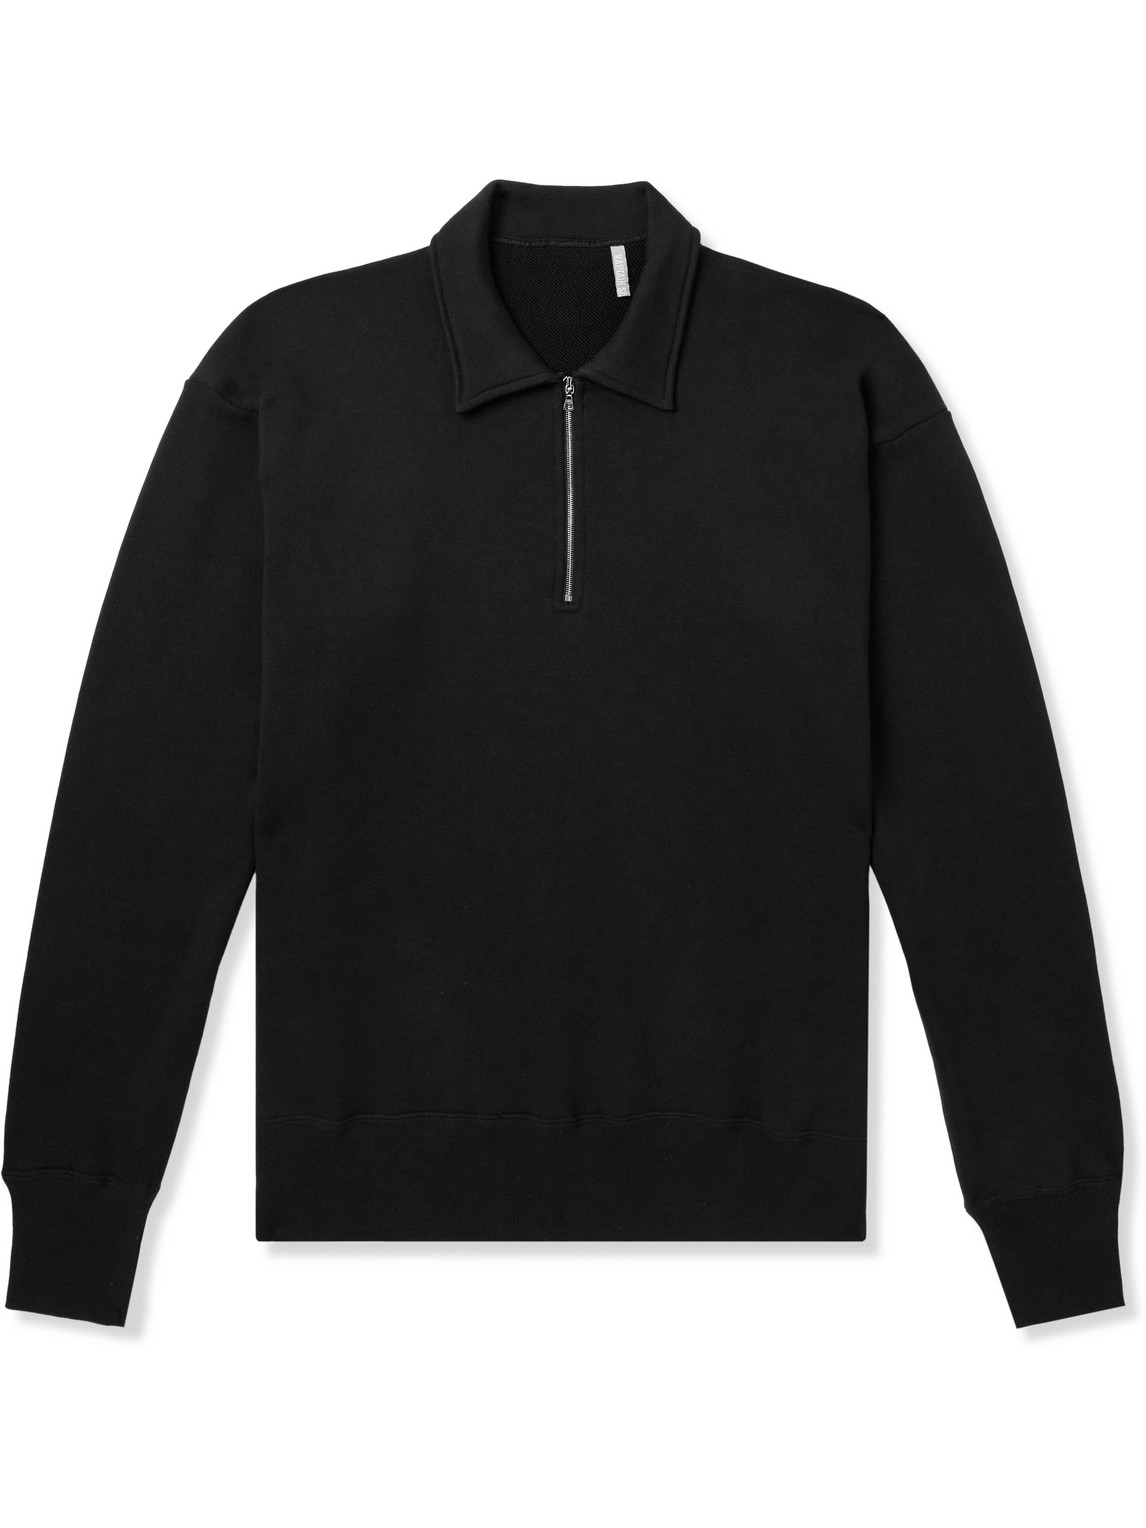 Suvin Cotton-Jersey Half-Zip Sweater